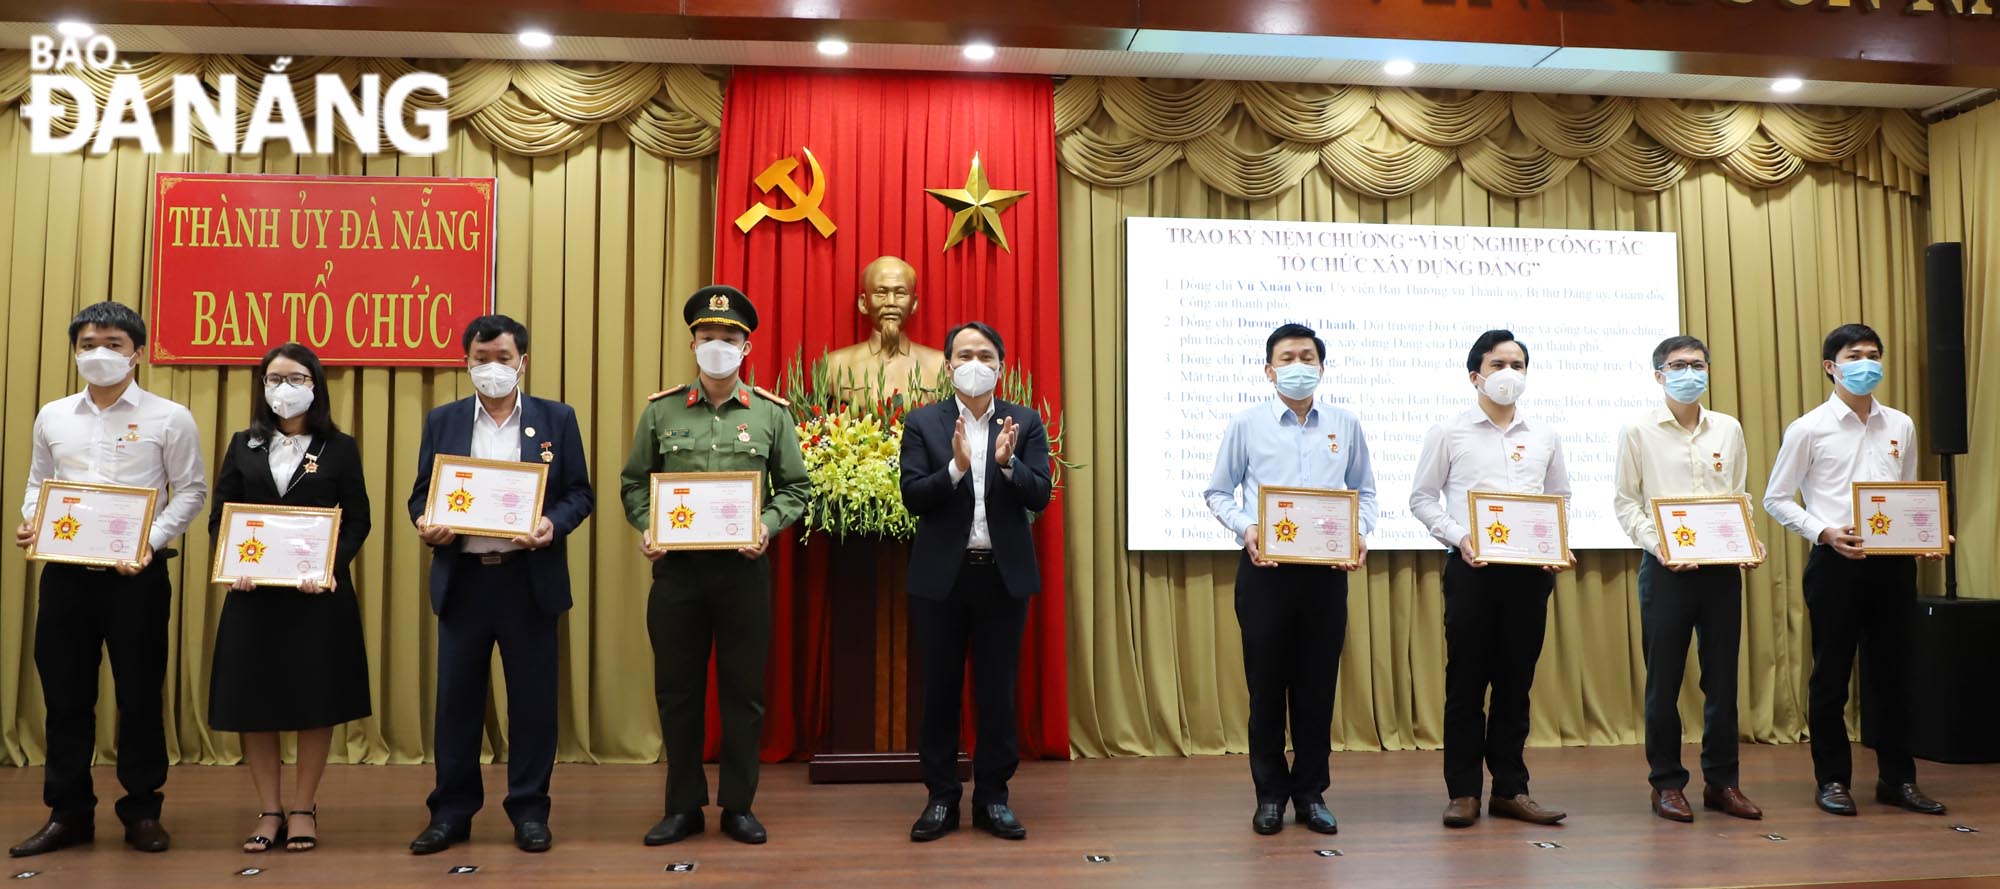 Trưởng ban Tổ chức Thành ủy Nguyễn Đình Vĩnh trao kỷ niệm chương vì sự nghiệp xây dựng Đảng cho các cá nhân. Ảnh: NGỌC PHÚ